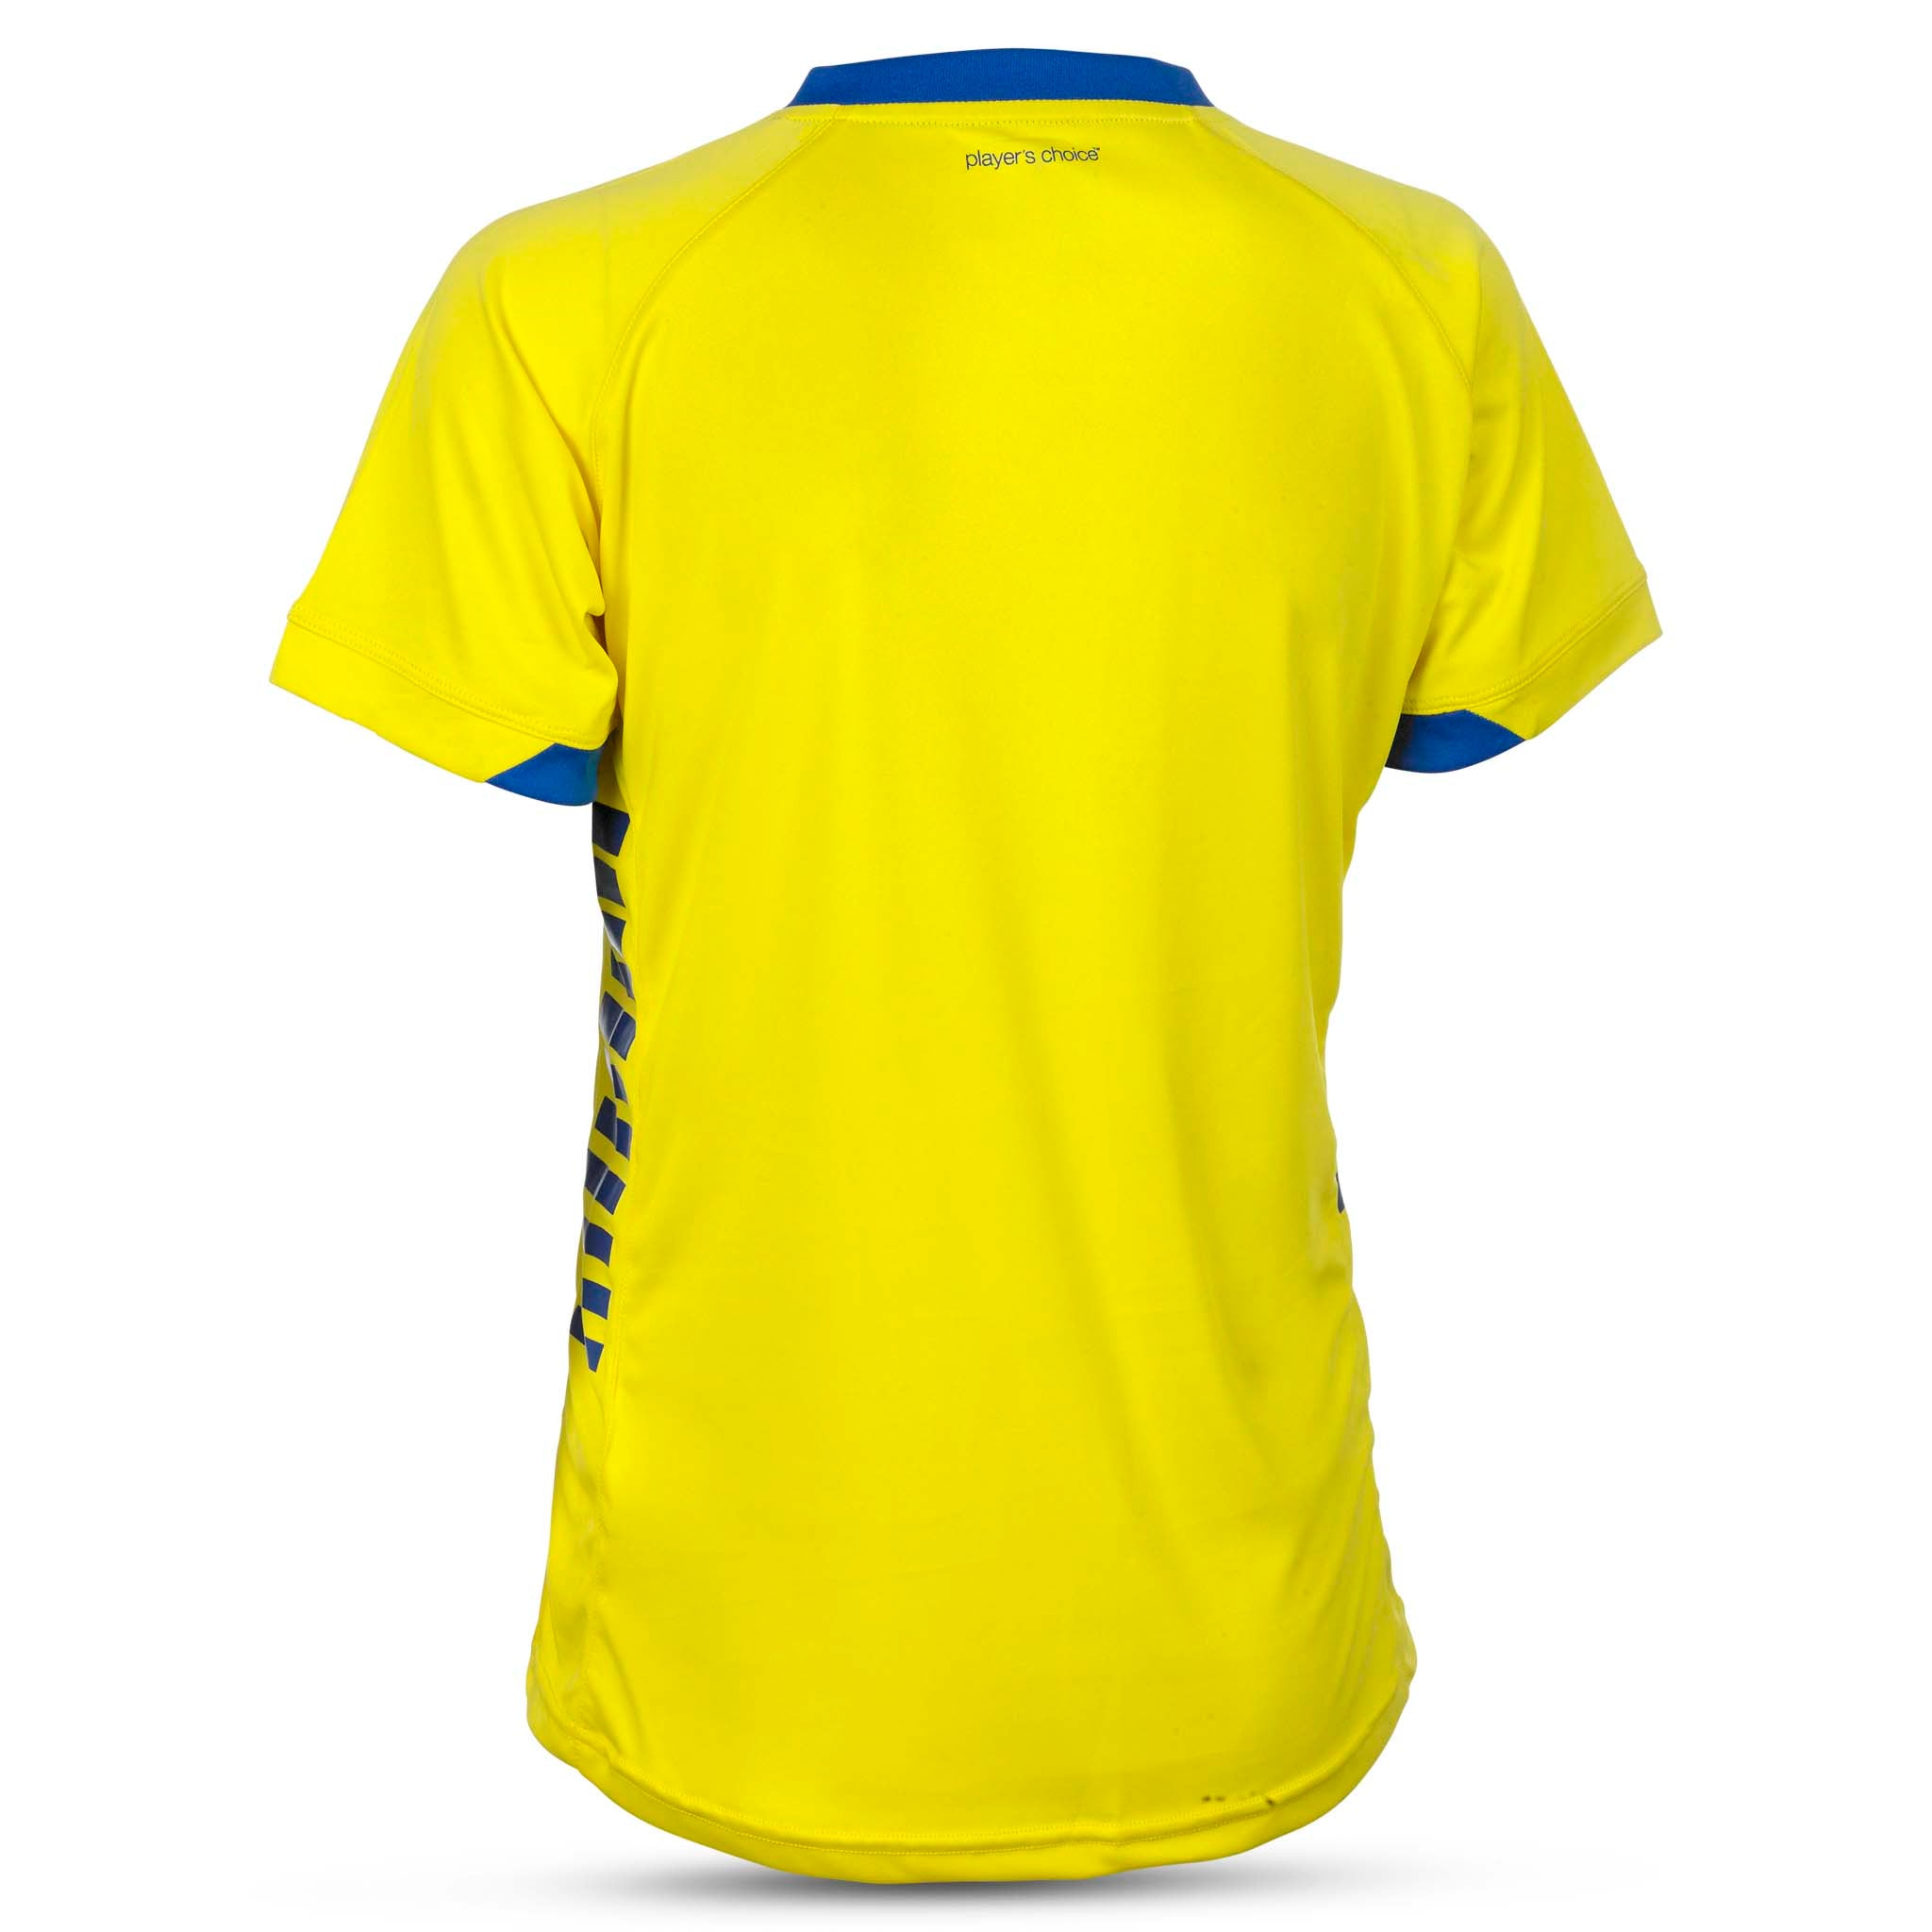 Spain Short Sleeve player shirt - women #colour_yellow/blue